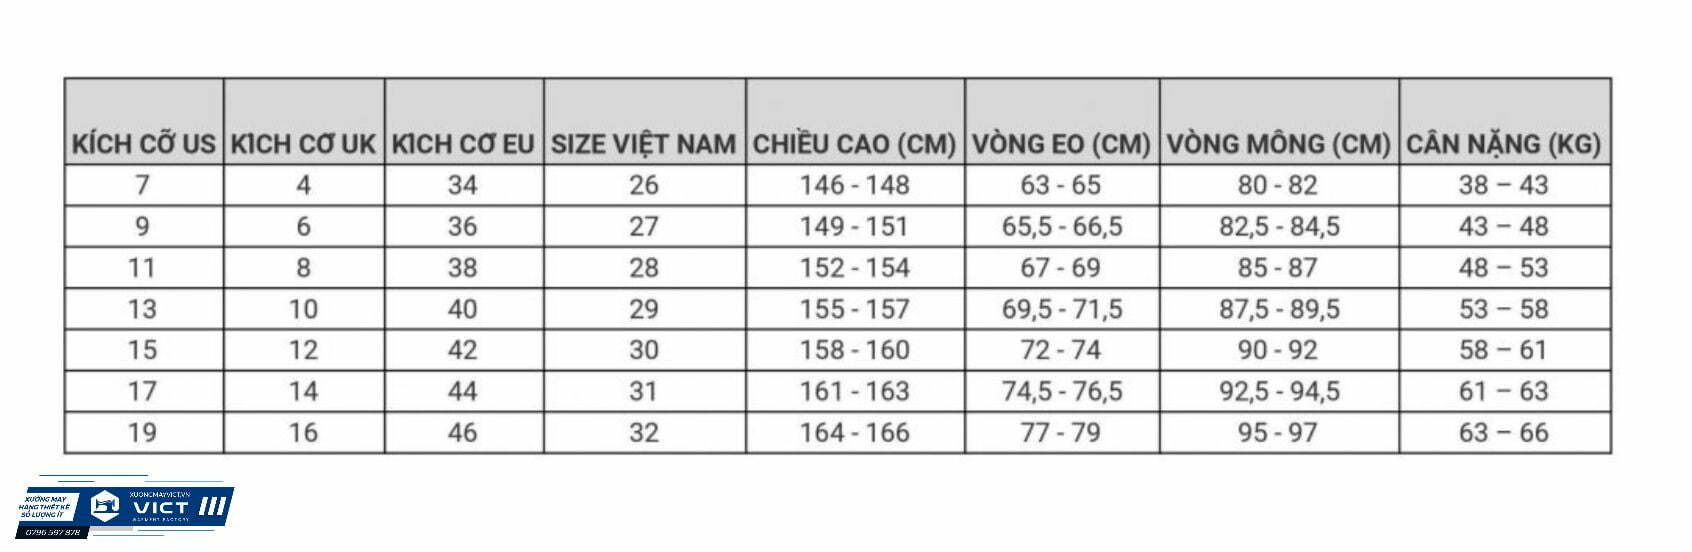 Bảng đo size quần jean nữ chuẩn Việt Nam, US, UK, EU